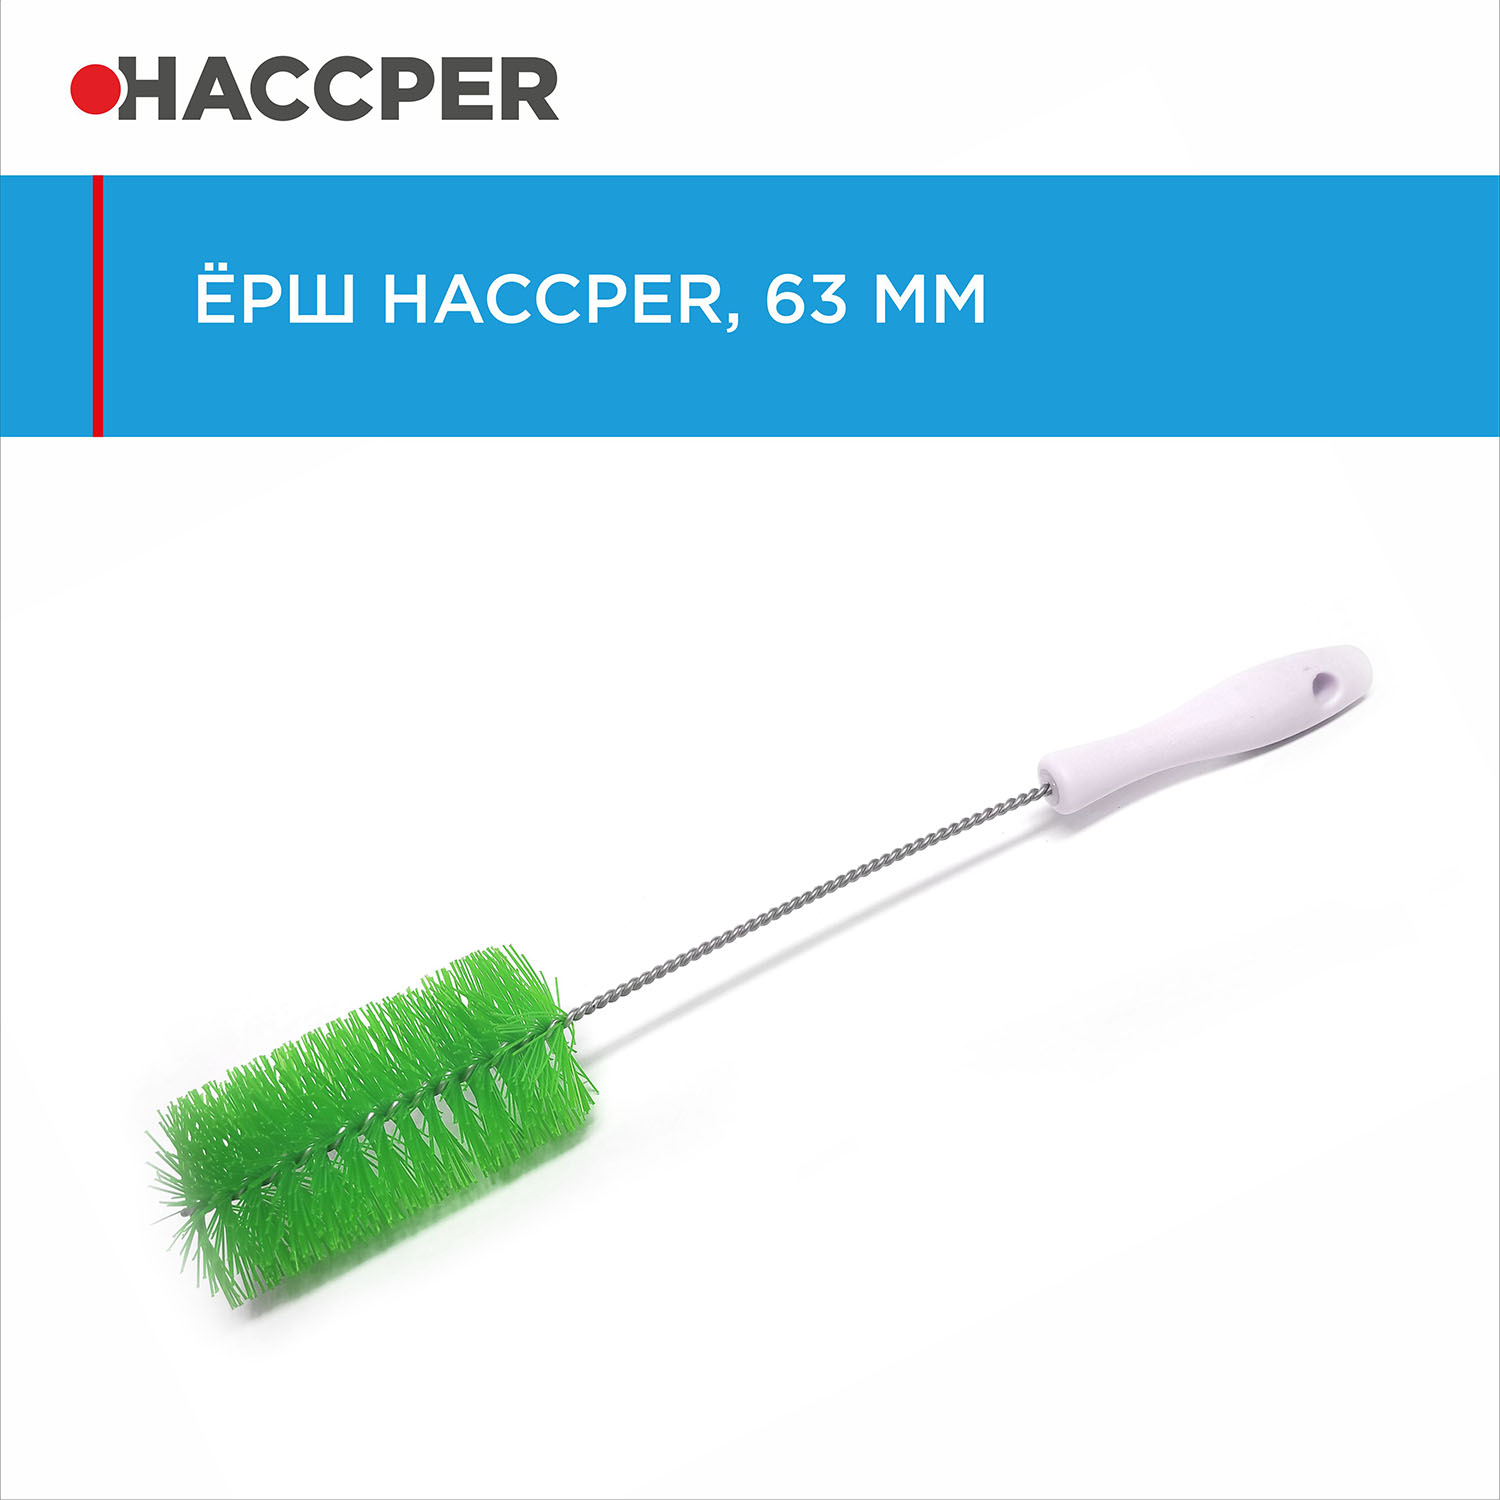 Ерш HACCPER, диаметр 63 мм, зеленый